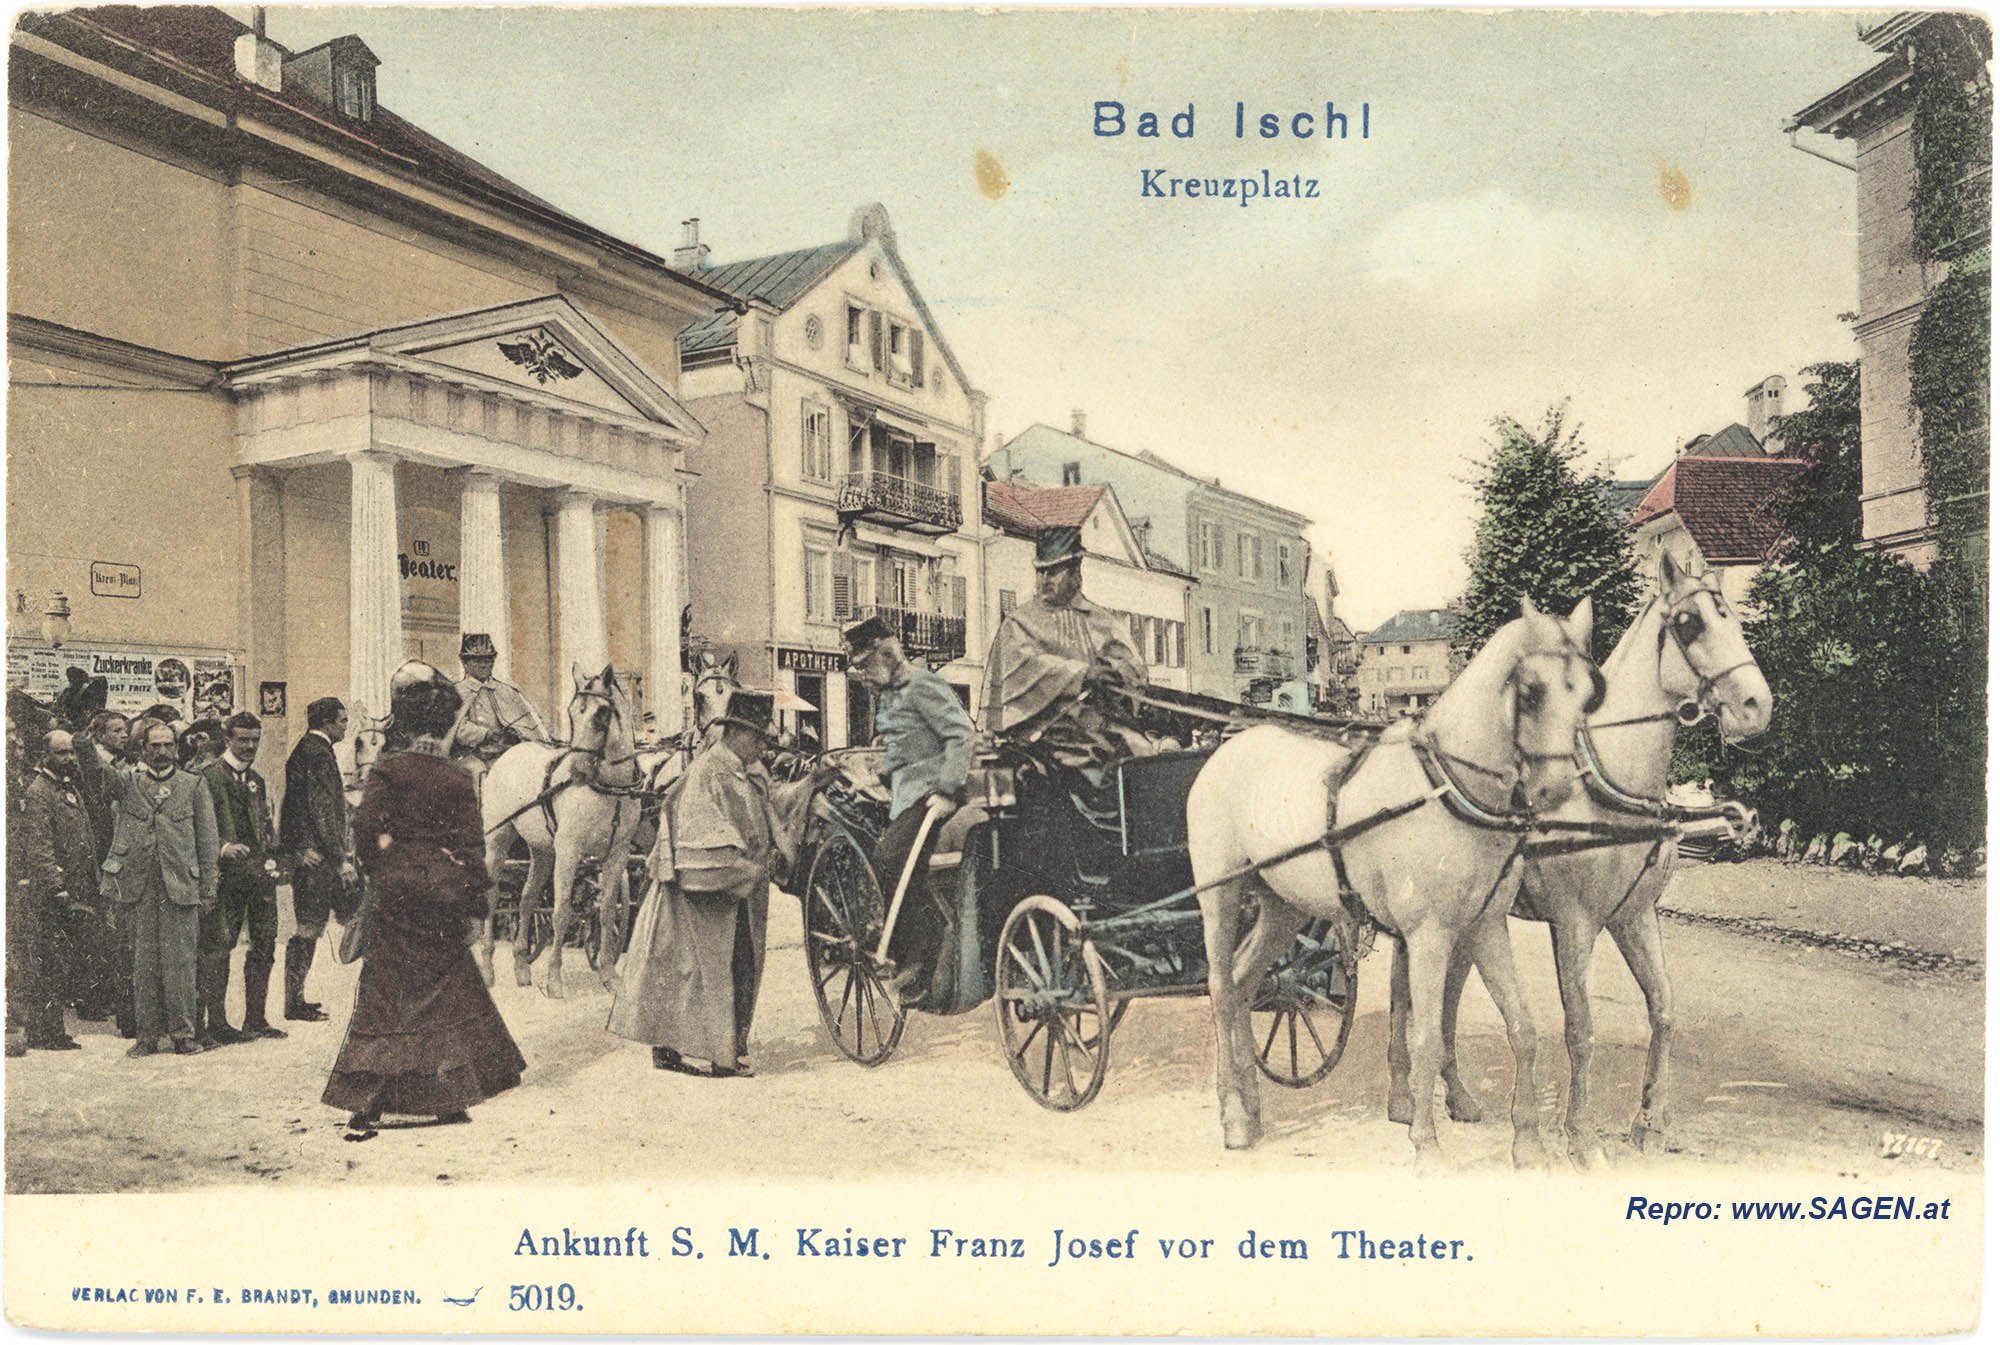 Bad Ischl Kreuzplatz. Ankunft S. M. Kaiser Franz Josef vor dem Theater.